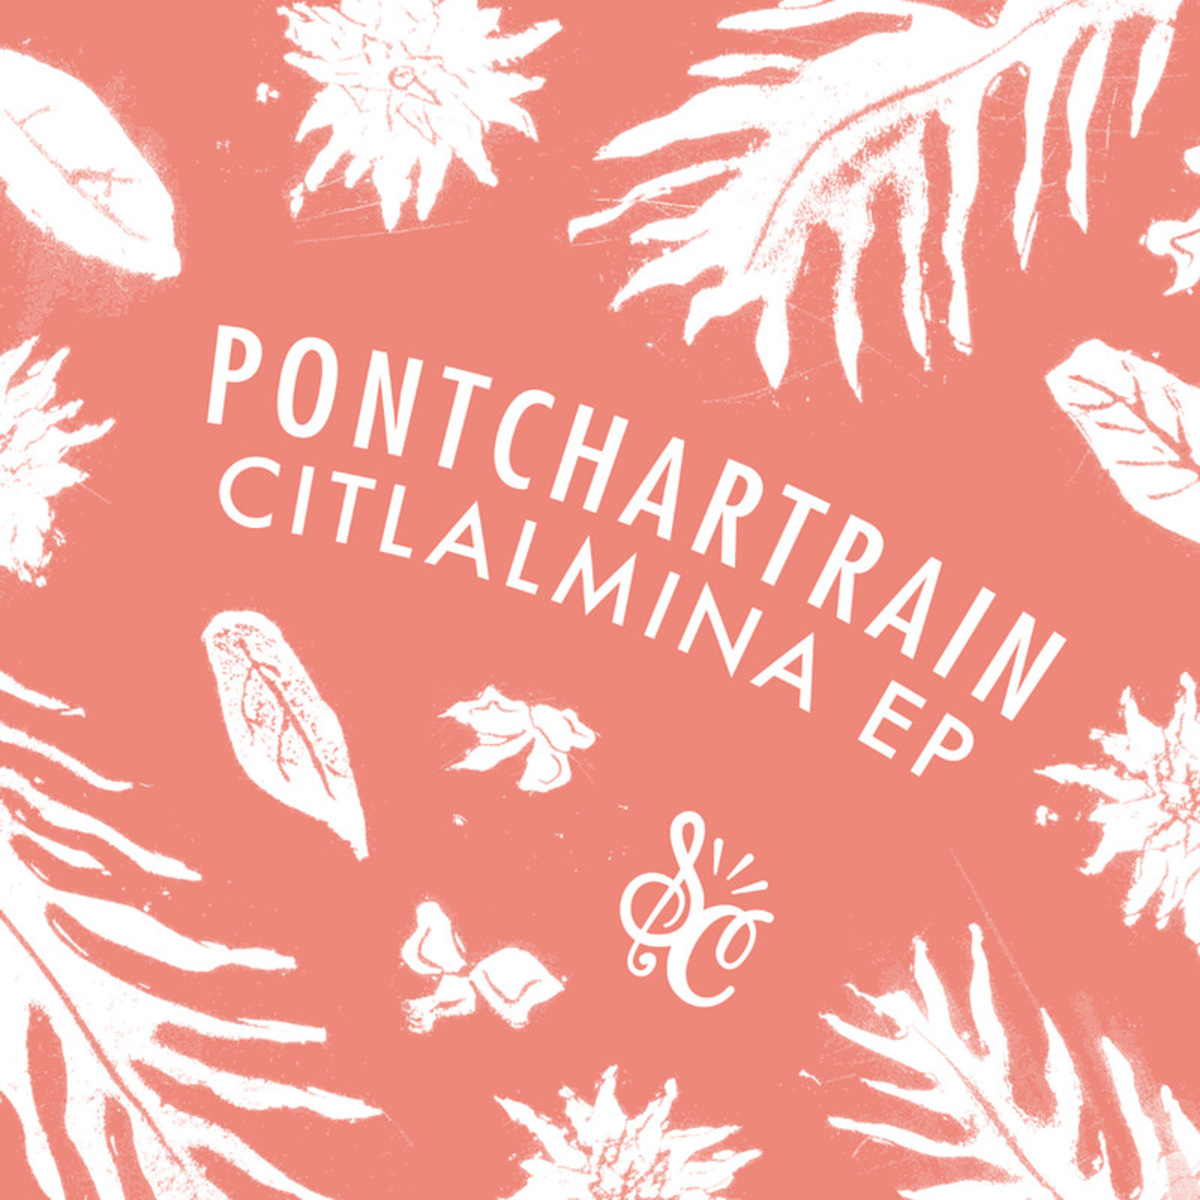 Pontchartrain - Citlalmina / Soul Clap Records